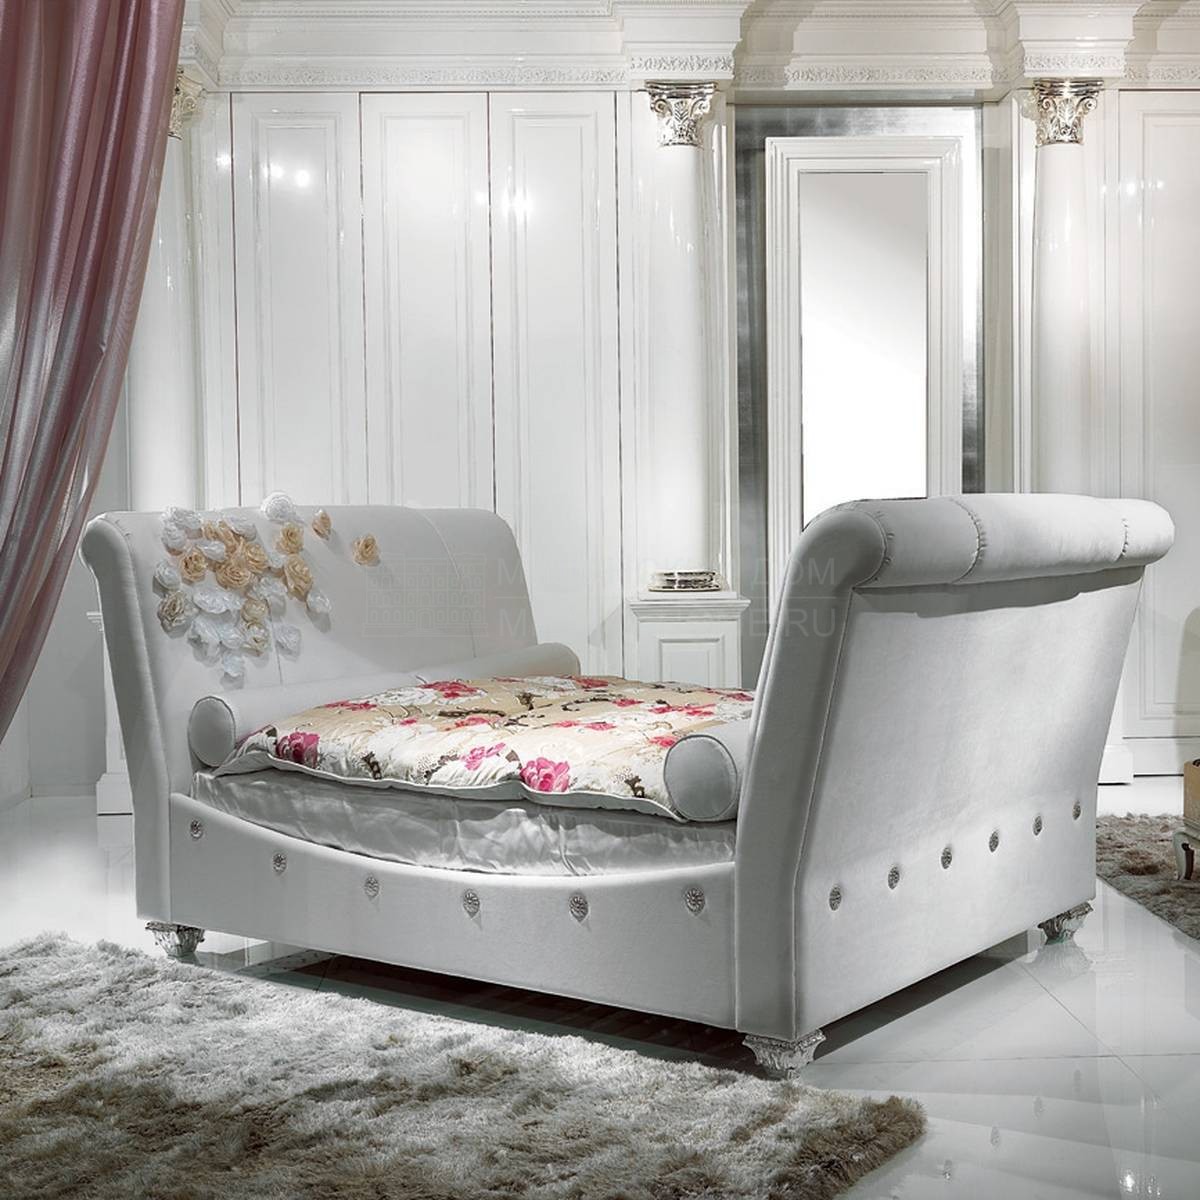 Кровать с мягким изголовьем Aurum/B 431 из Италии фабрики ELLEDUE